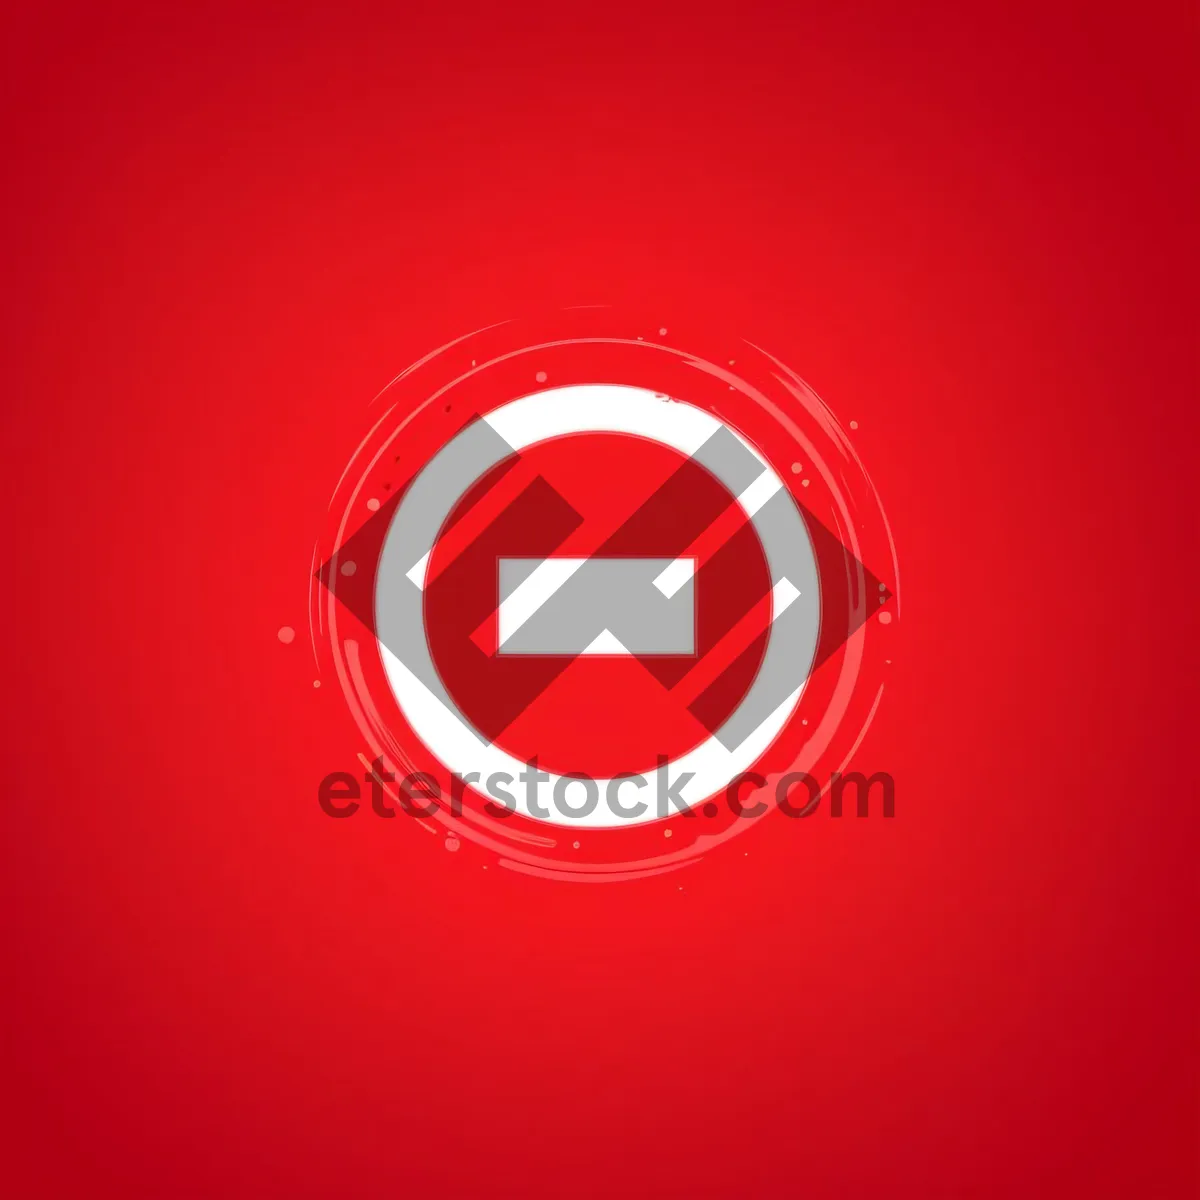 Picture of Web Design Annual Button: Shiny Graphic Symbol